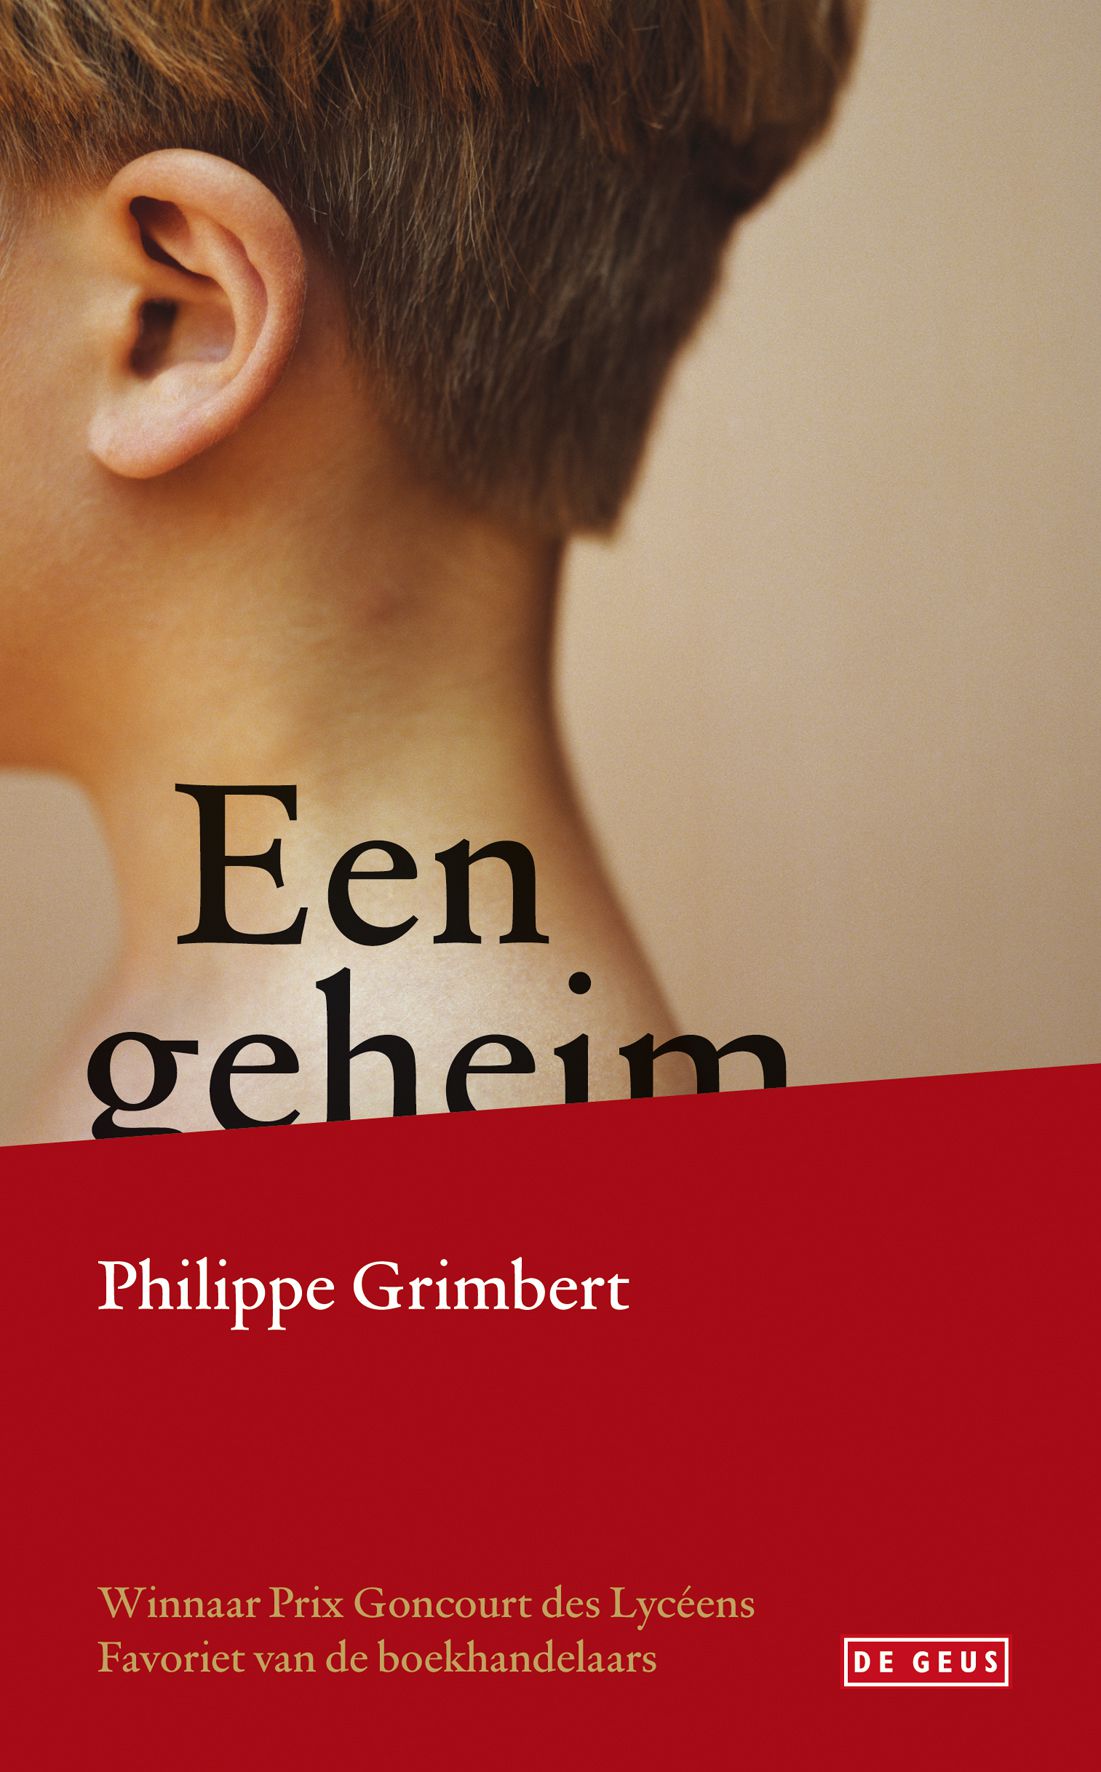 Philippe Grimbert: Een geheim. Vertaald door Jan Versteeg. De Geus, 125 blz. € 15,90